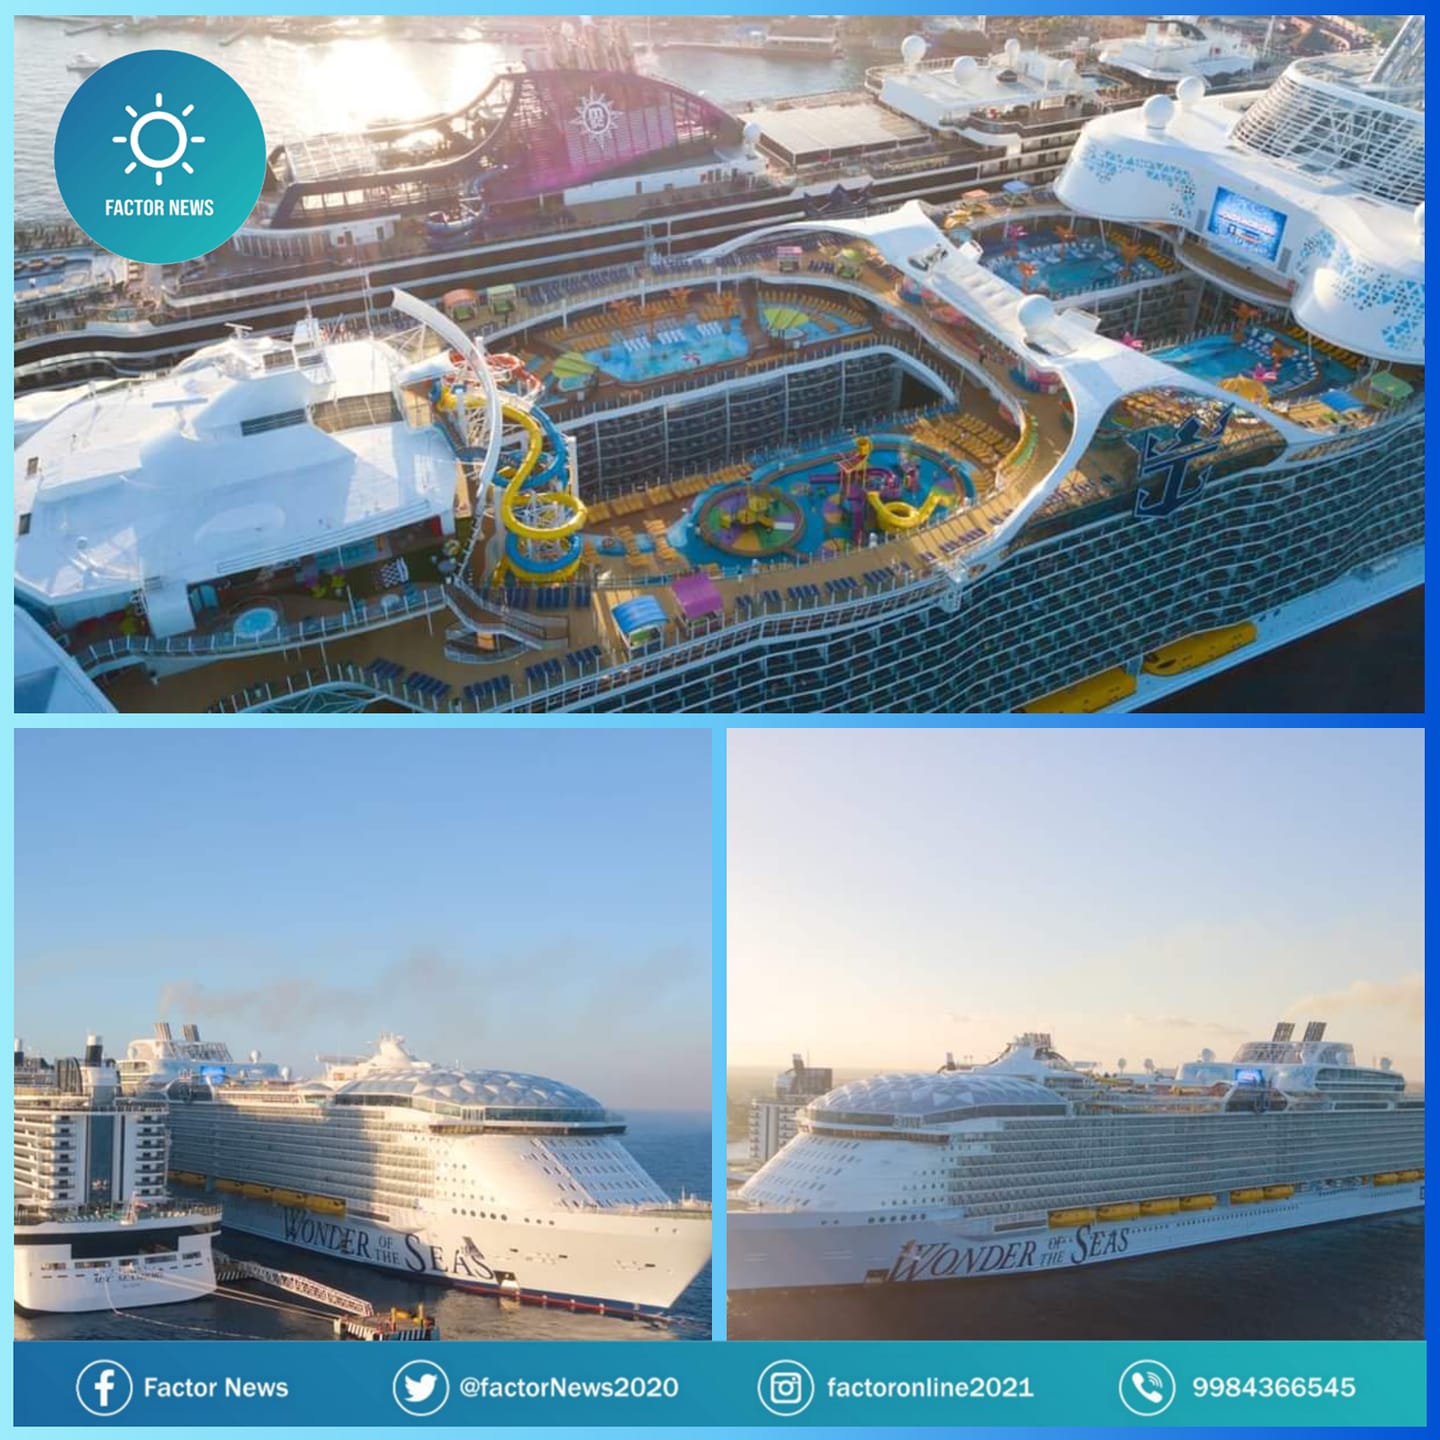 Llega a Cozumel el crucero más grande del mundo.